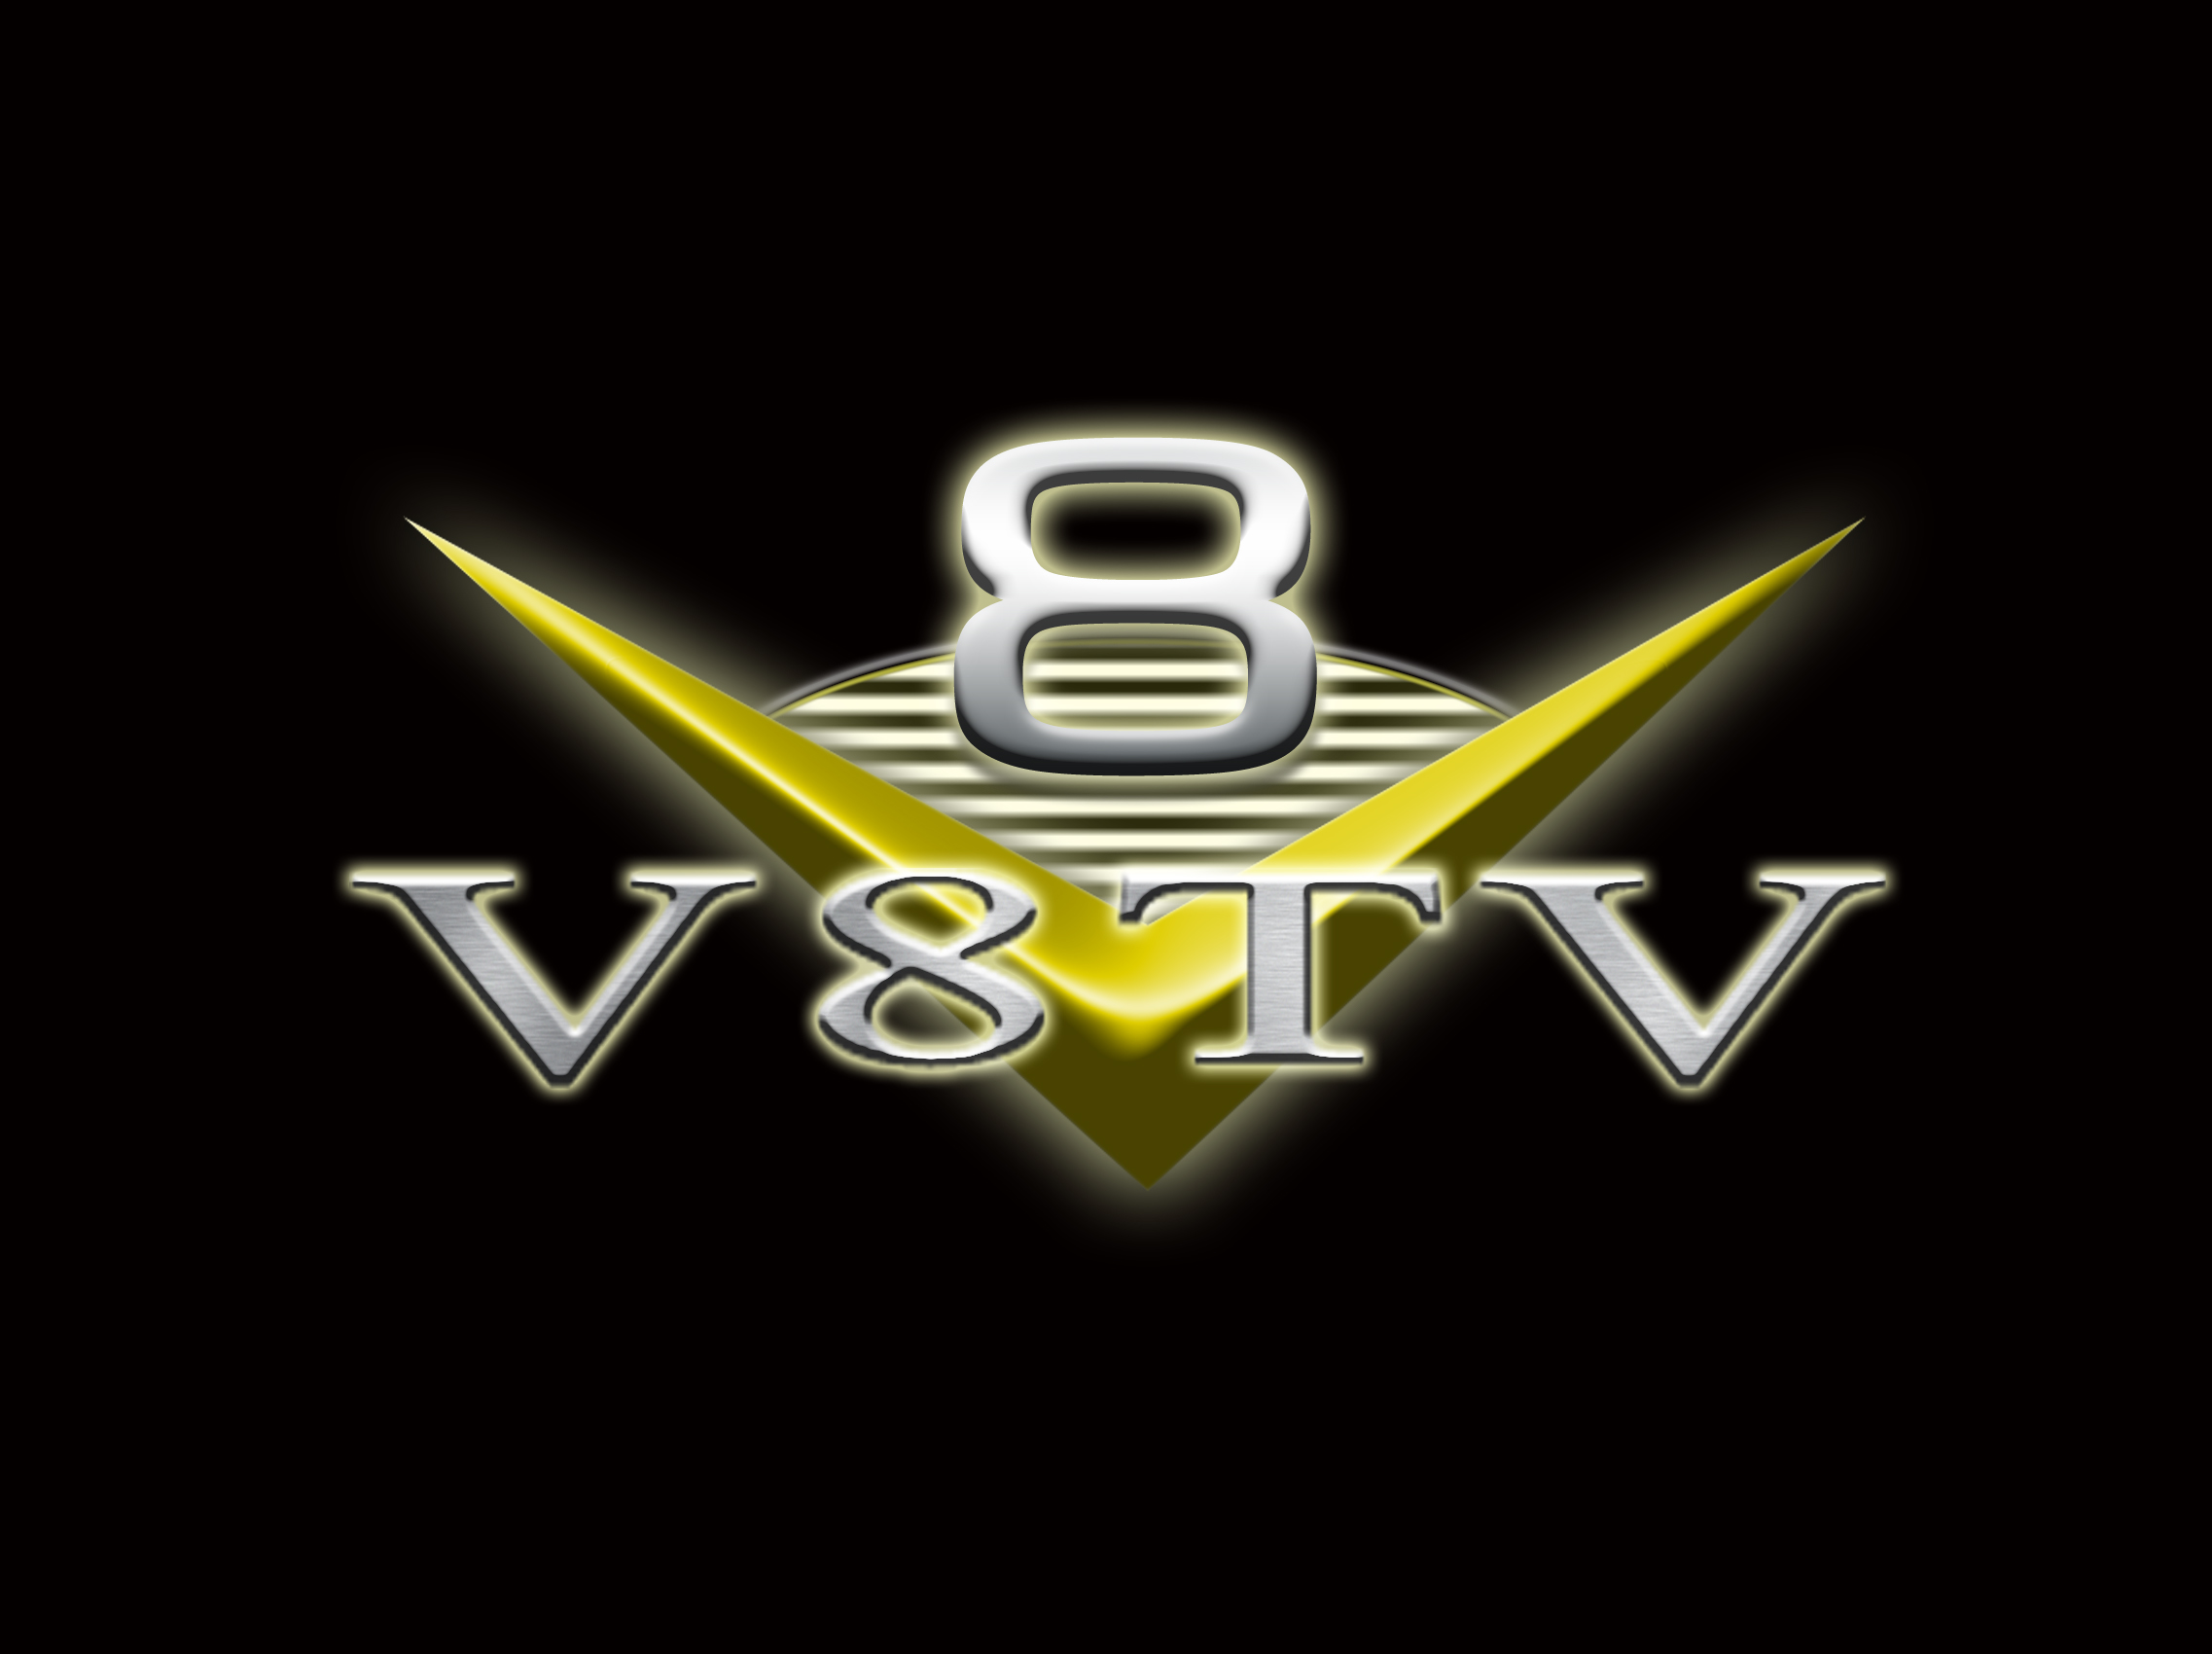 V8TV Logo Black Background